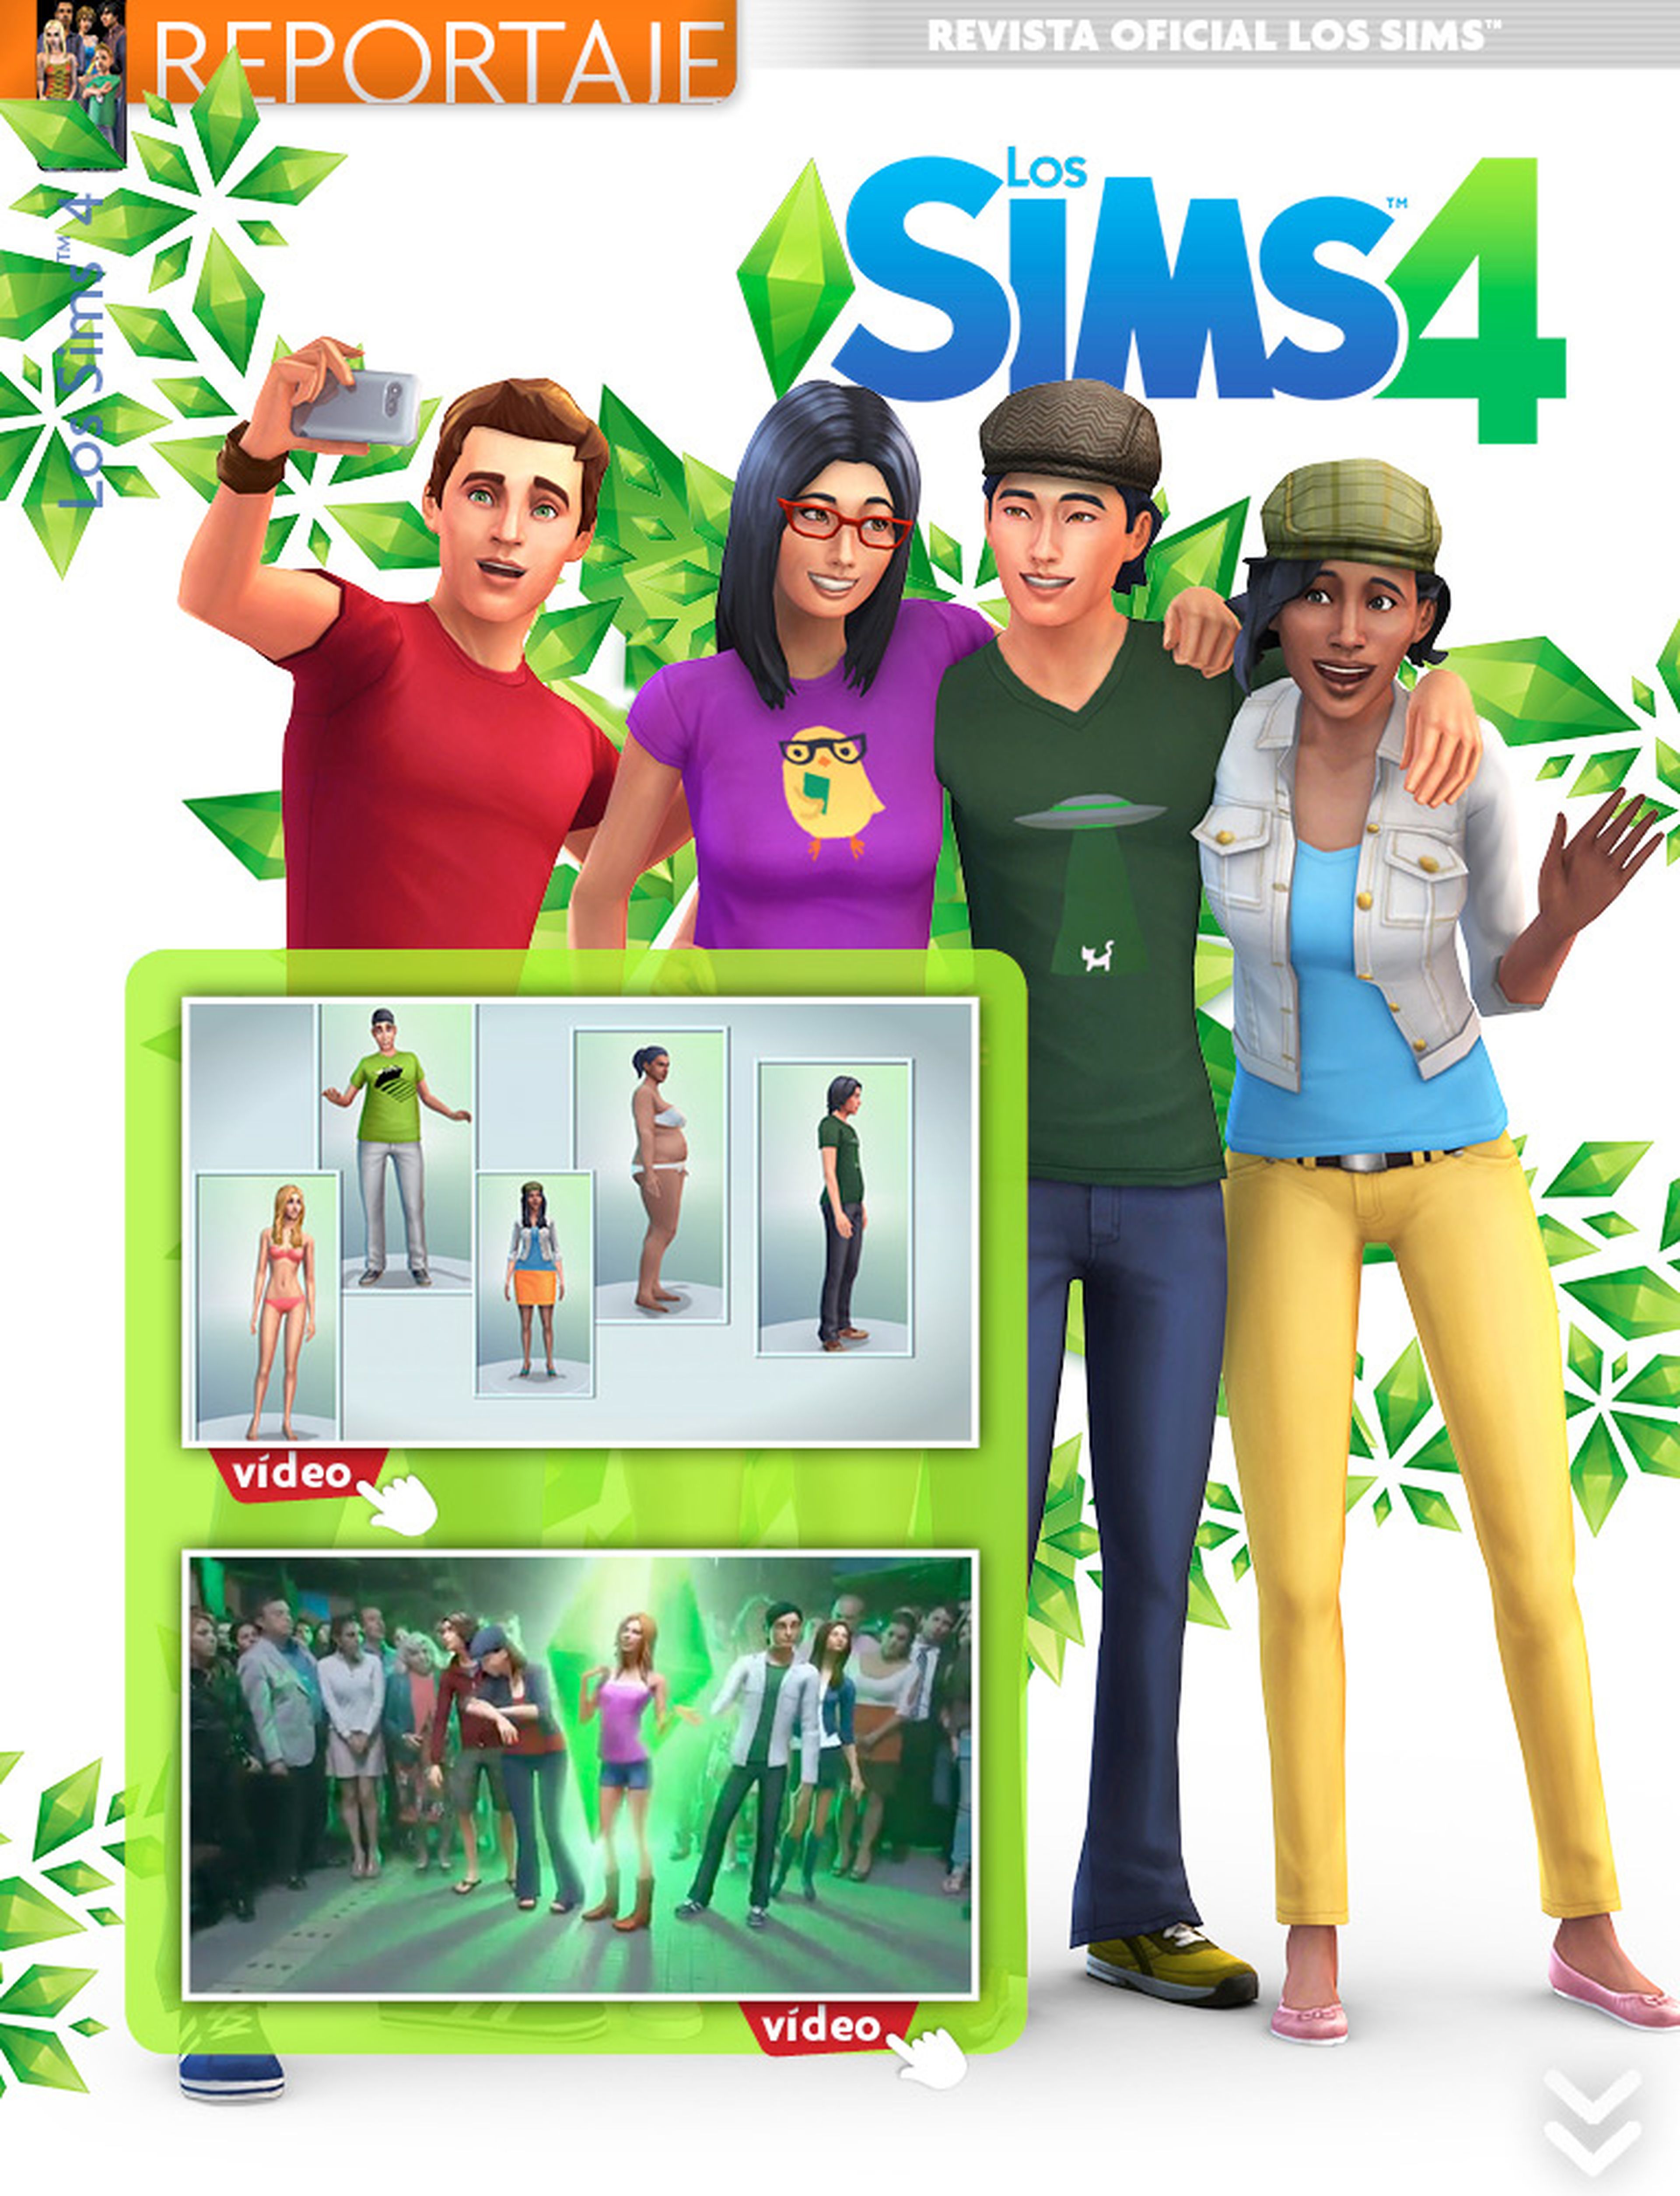 ¡Los Sims 4 llegan a la Revista Oficial!